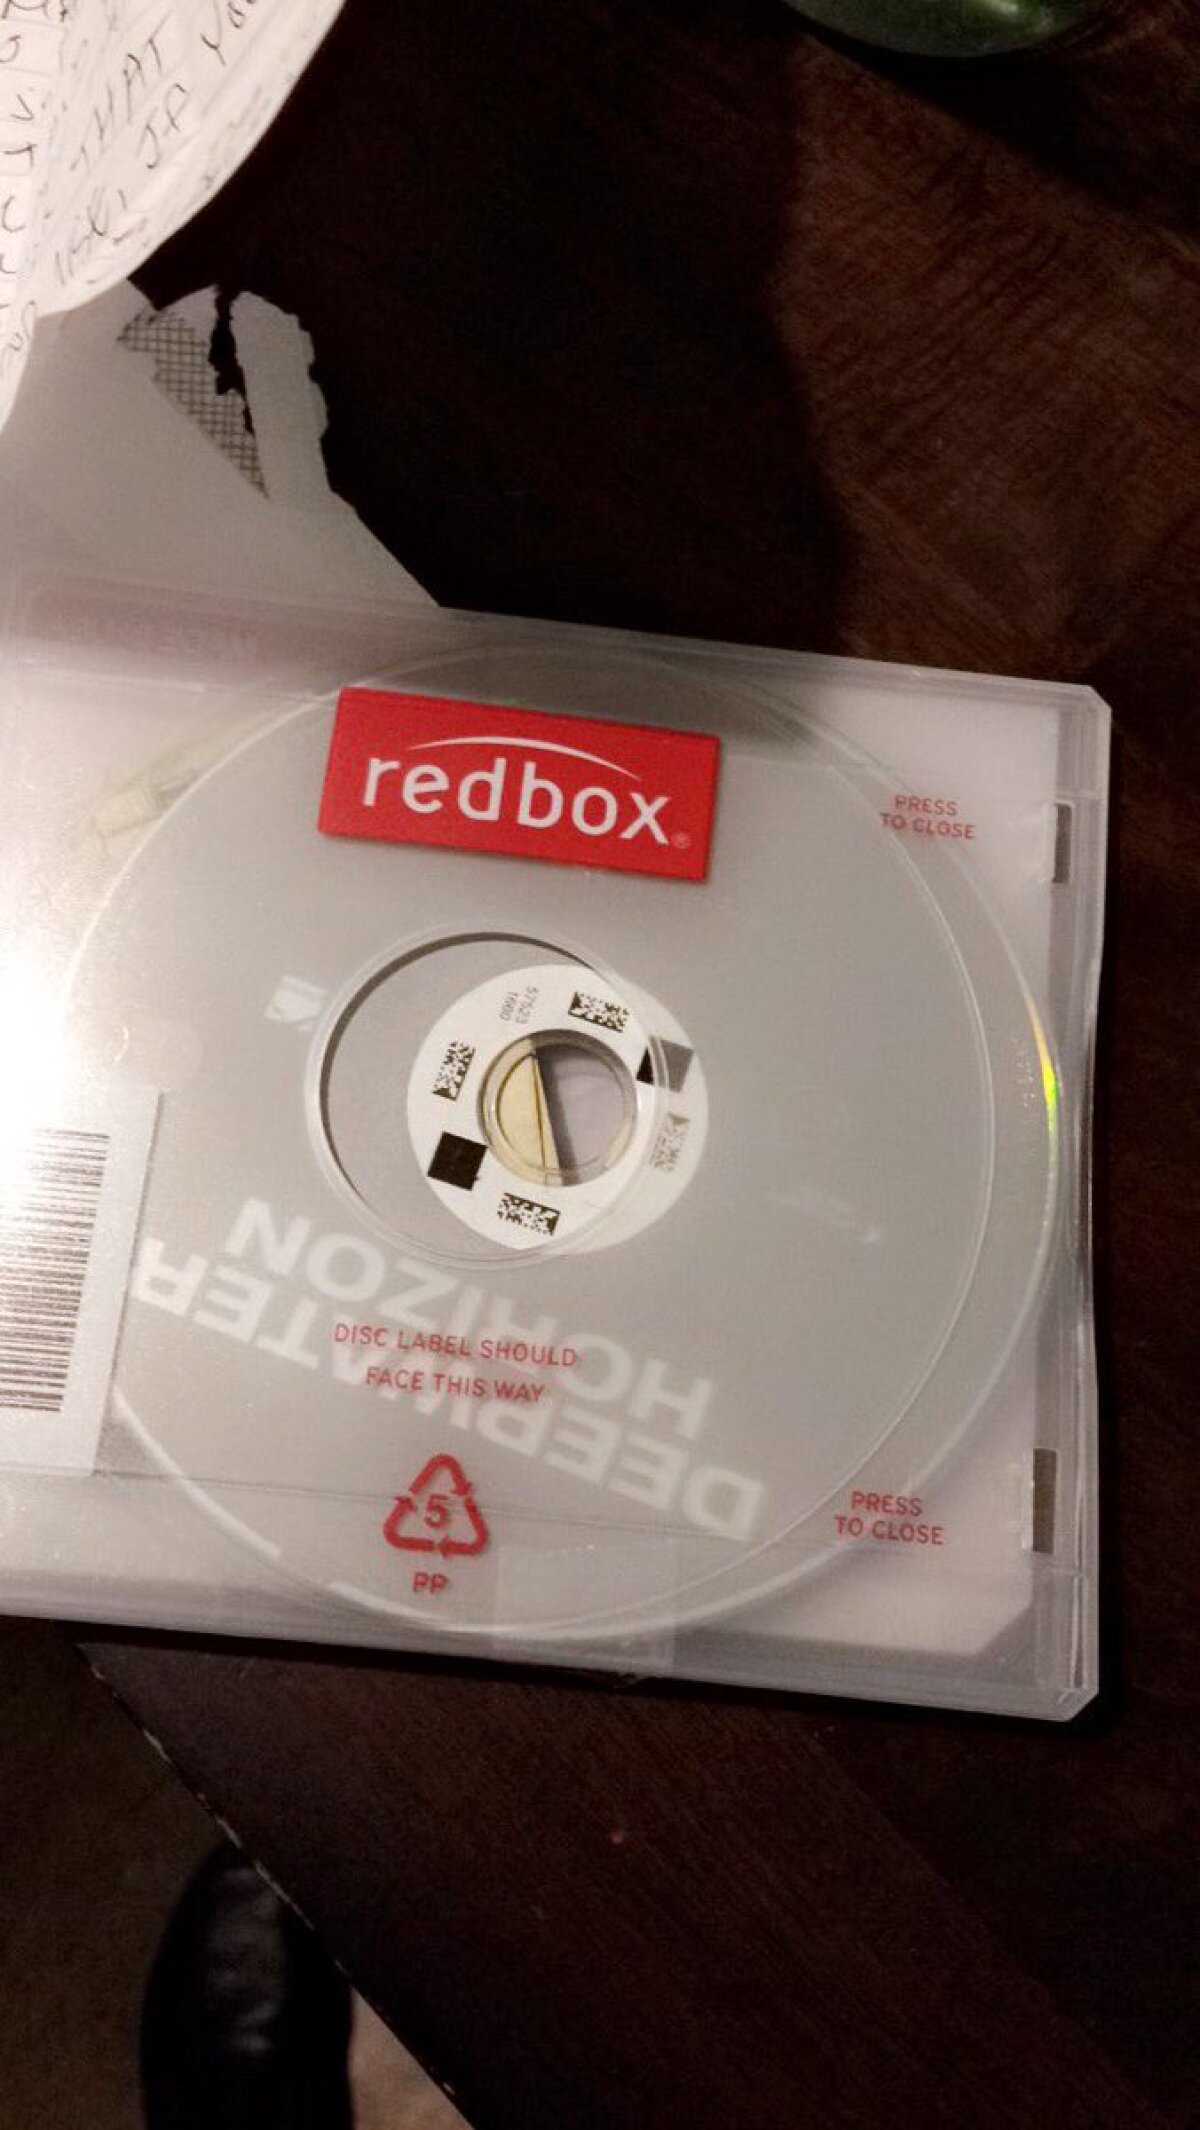 FOTO A închiriat un film pe DVD, dar când a deschis cutia a avut o surpriză imensă!